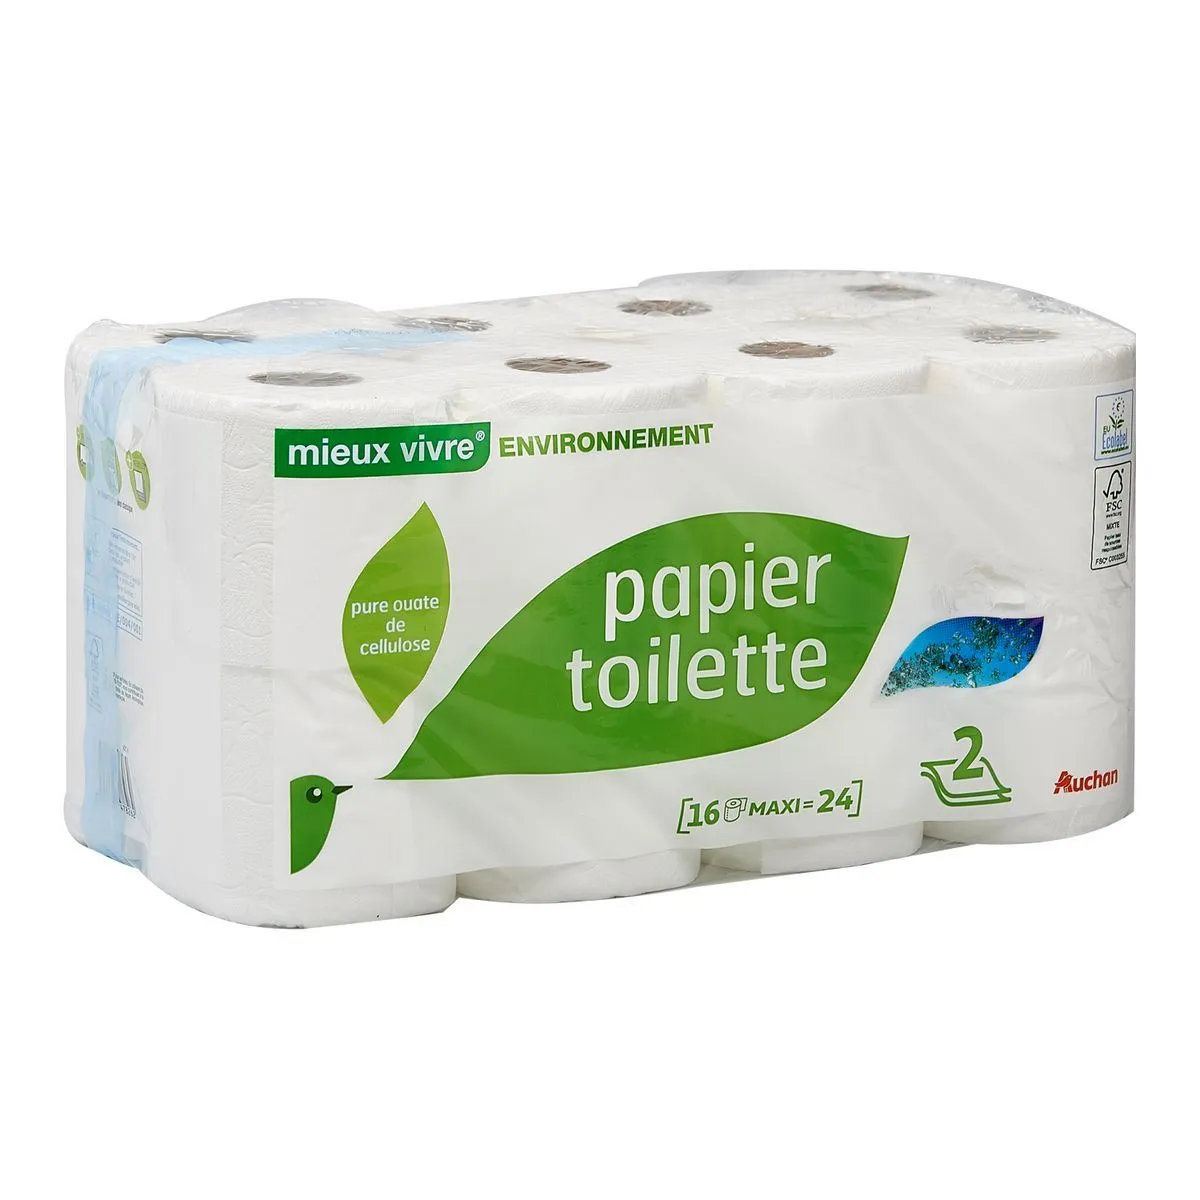 papier toilette mieux vivre environnement auchan 